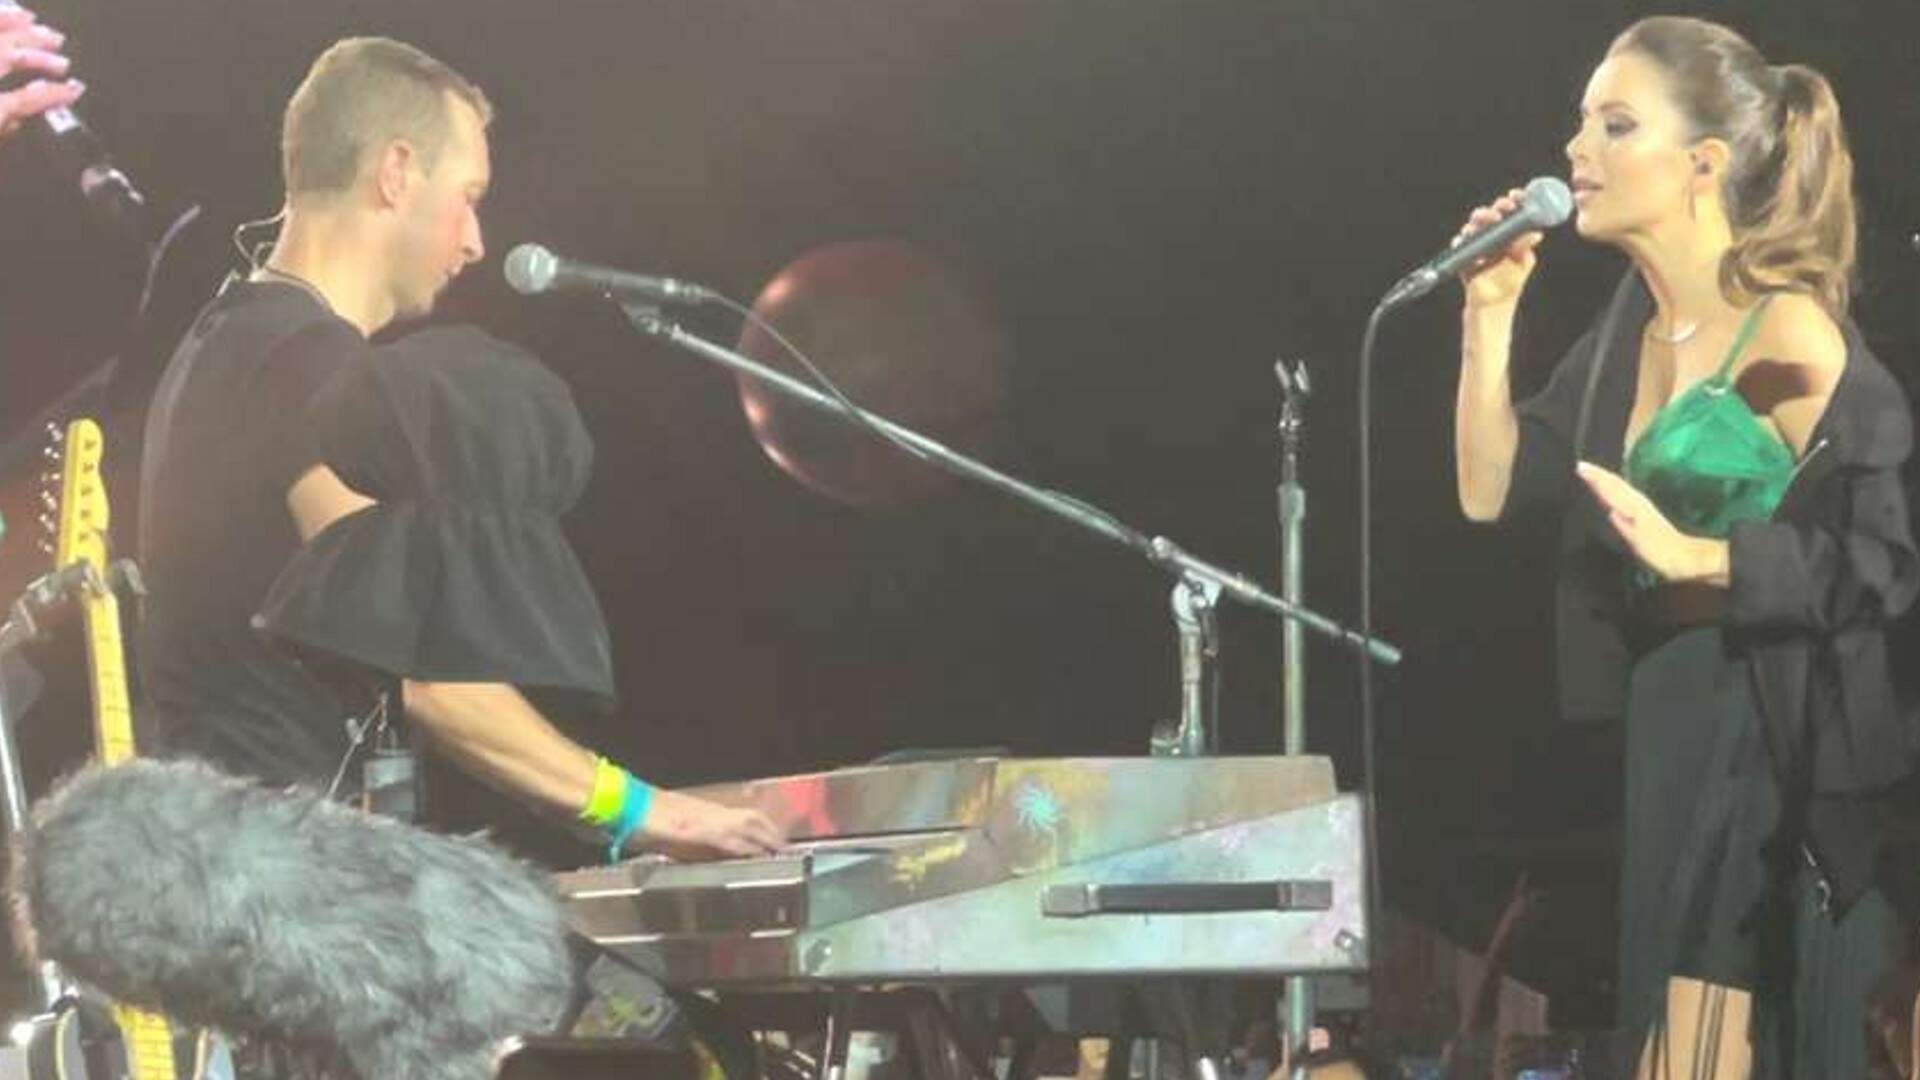 Sandy faz participação especial no show do Coldplay em SP e canta sucessos com Chris Martin - Metropolitana FM